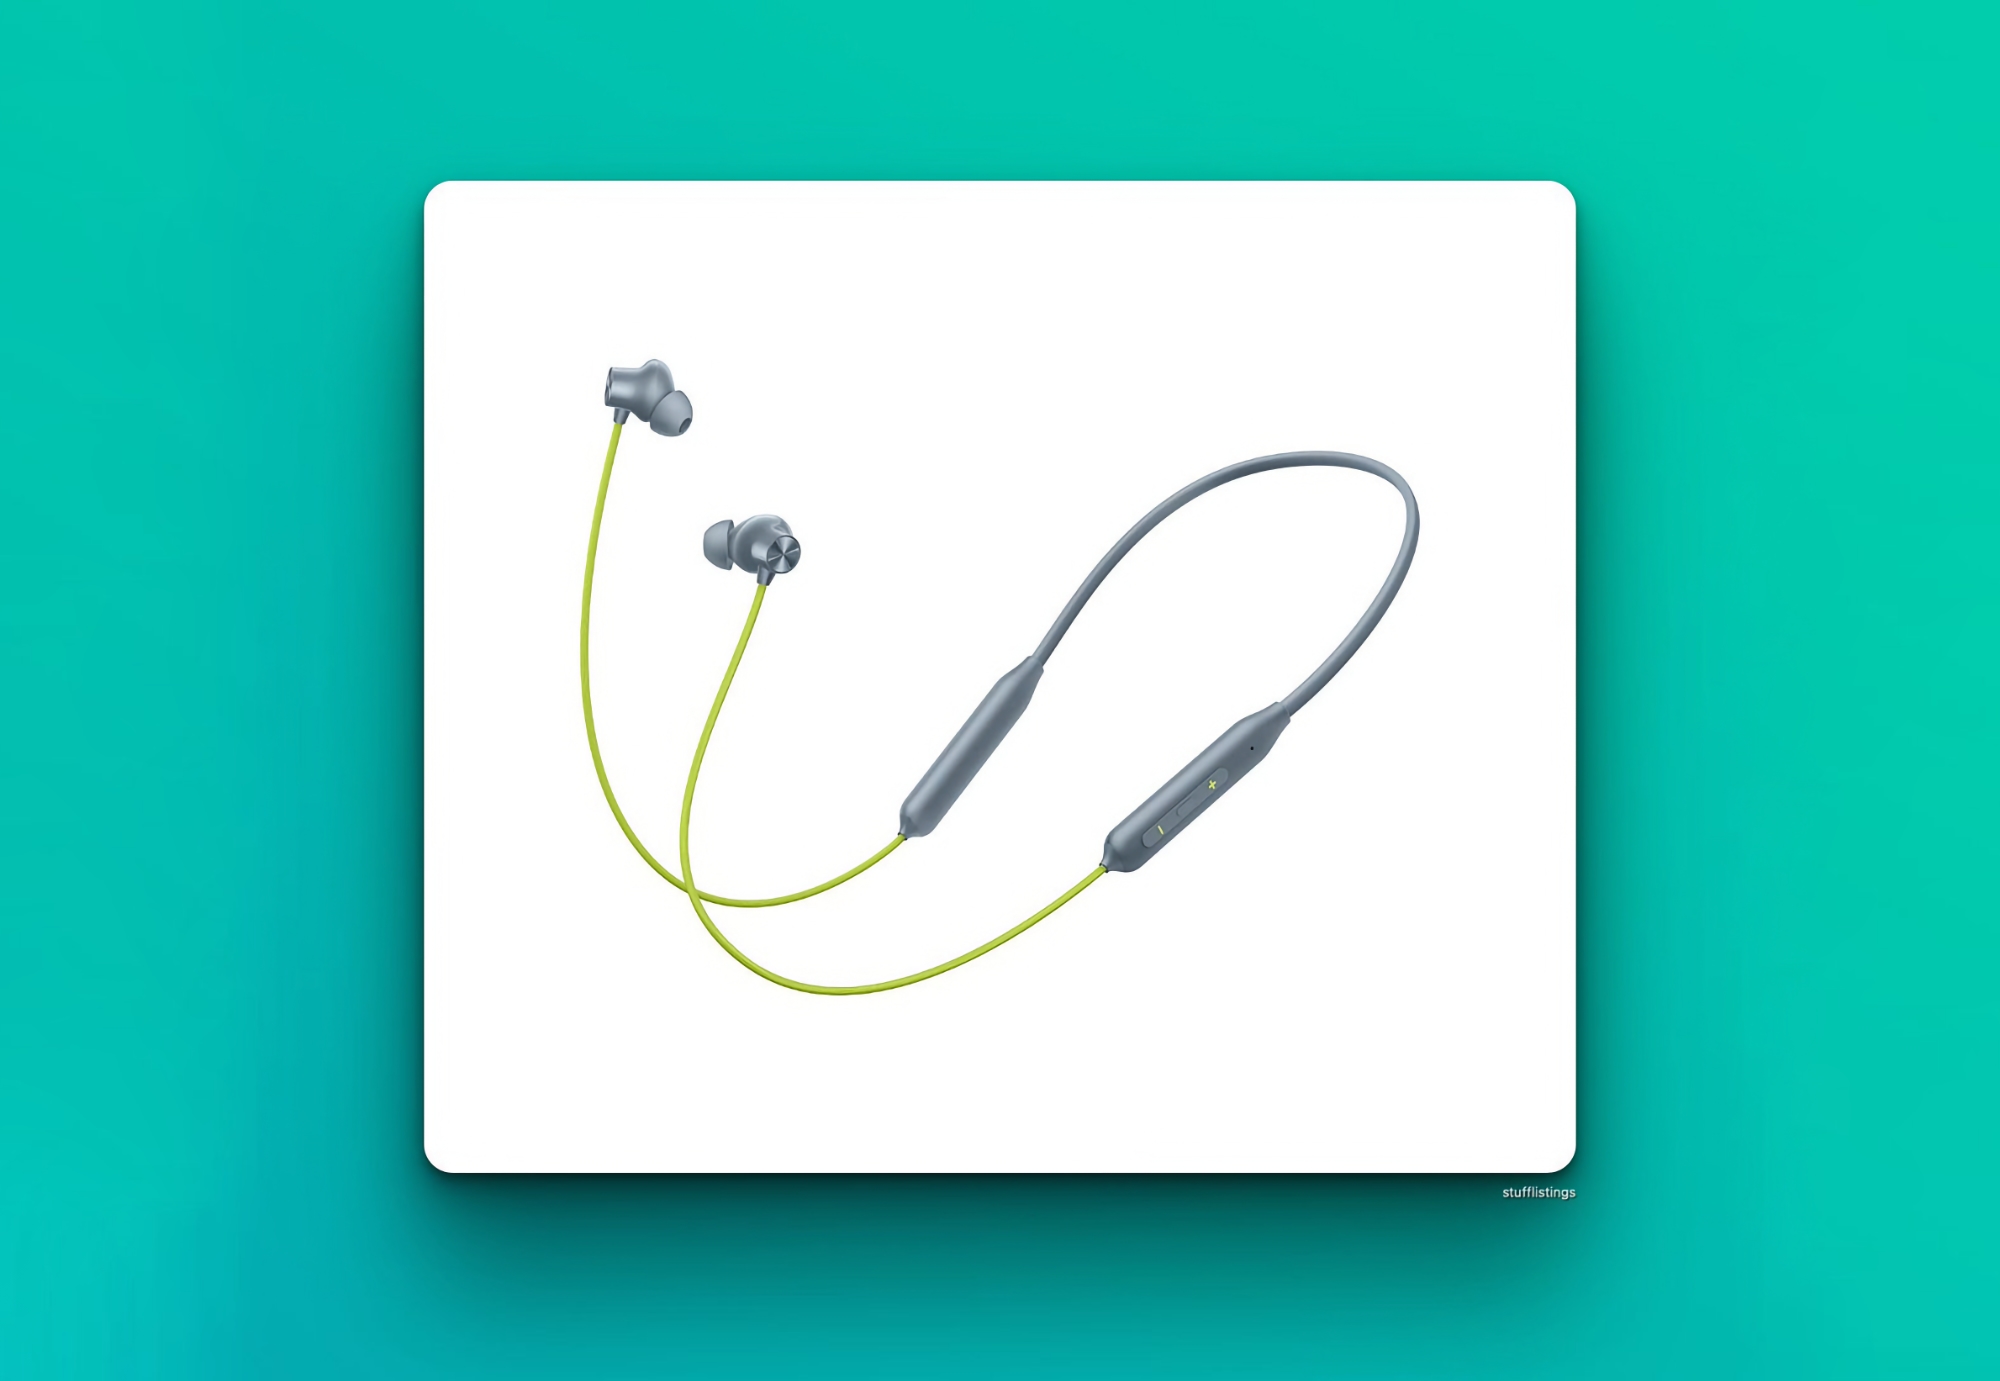 Información privilegiada: OnePlus presentará los auriculares Bullets Wireless Z2 en verde Jazz el 1 de junio